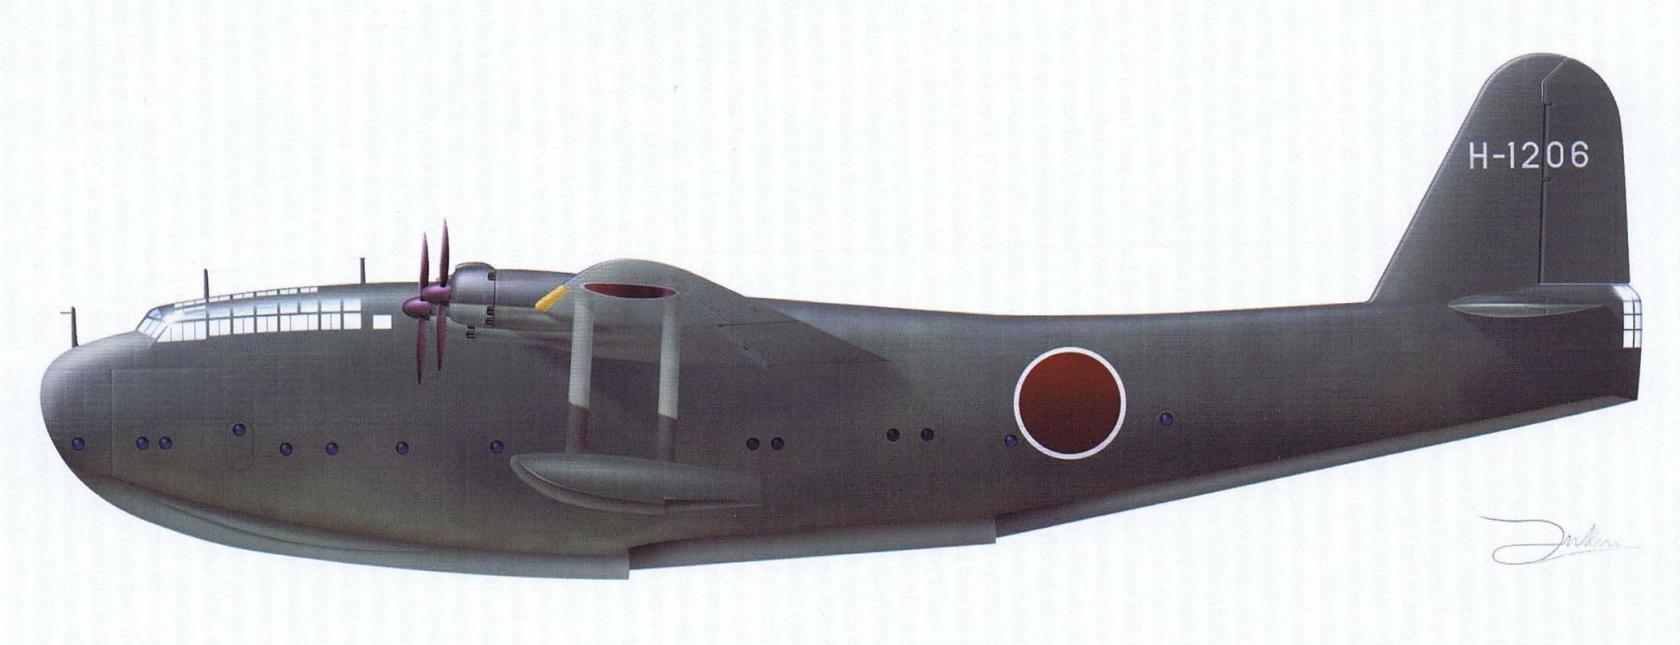 7 k 8 11 k 1. Kawanishi h11k. Kawanishi KX-03 самолет. Kawanishi k-200. Kawanishi h11k соку.